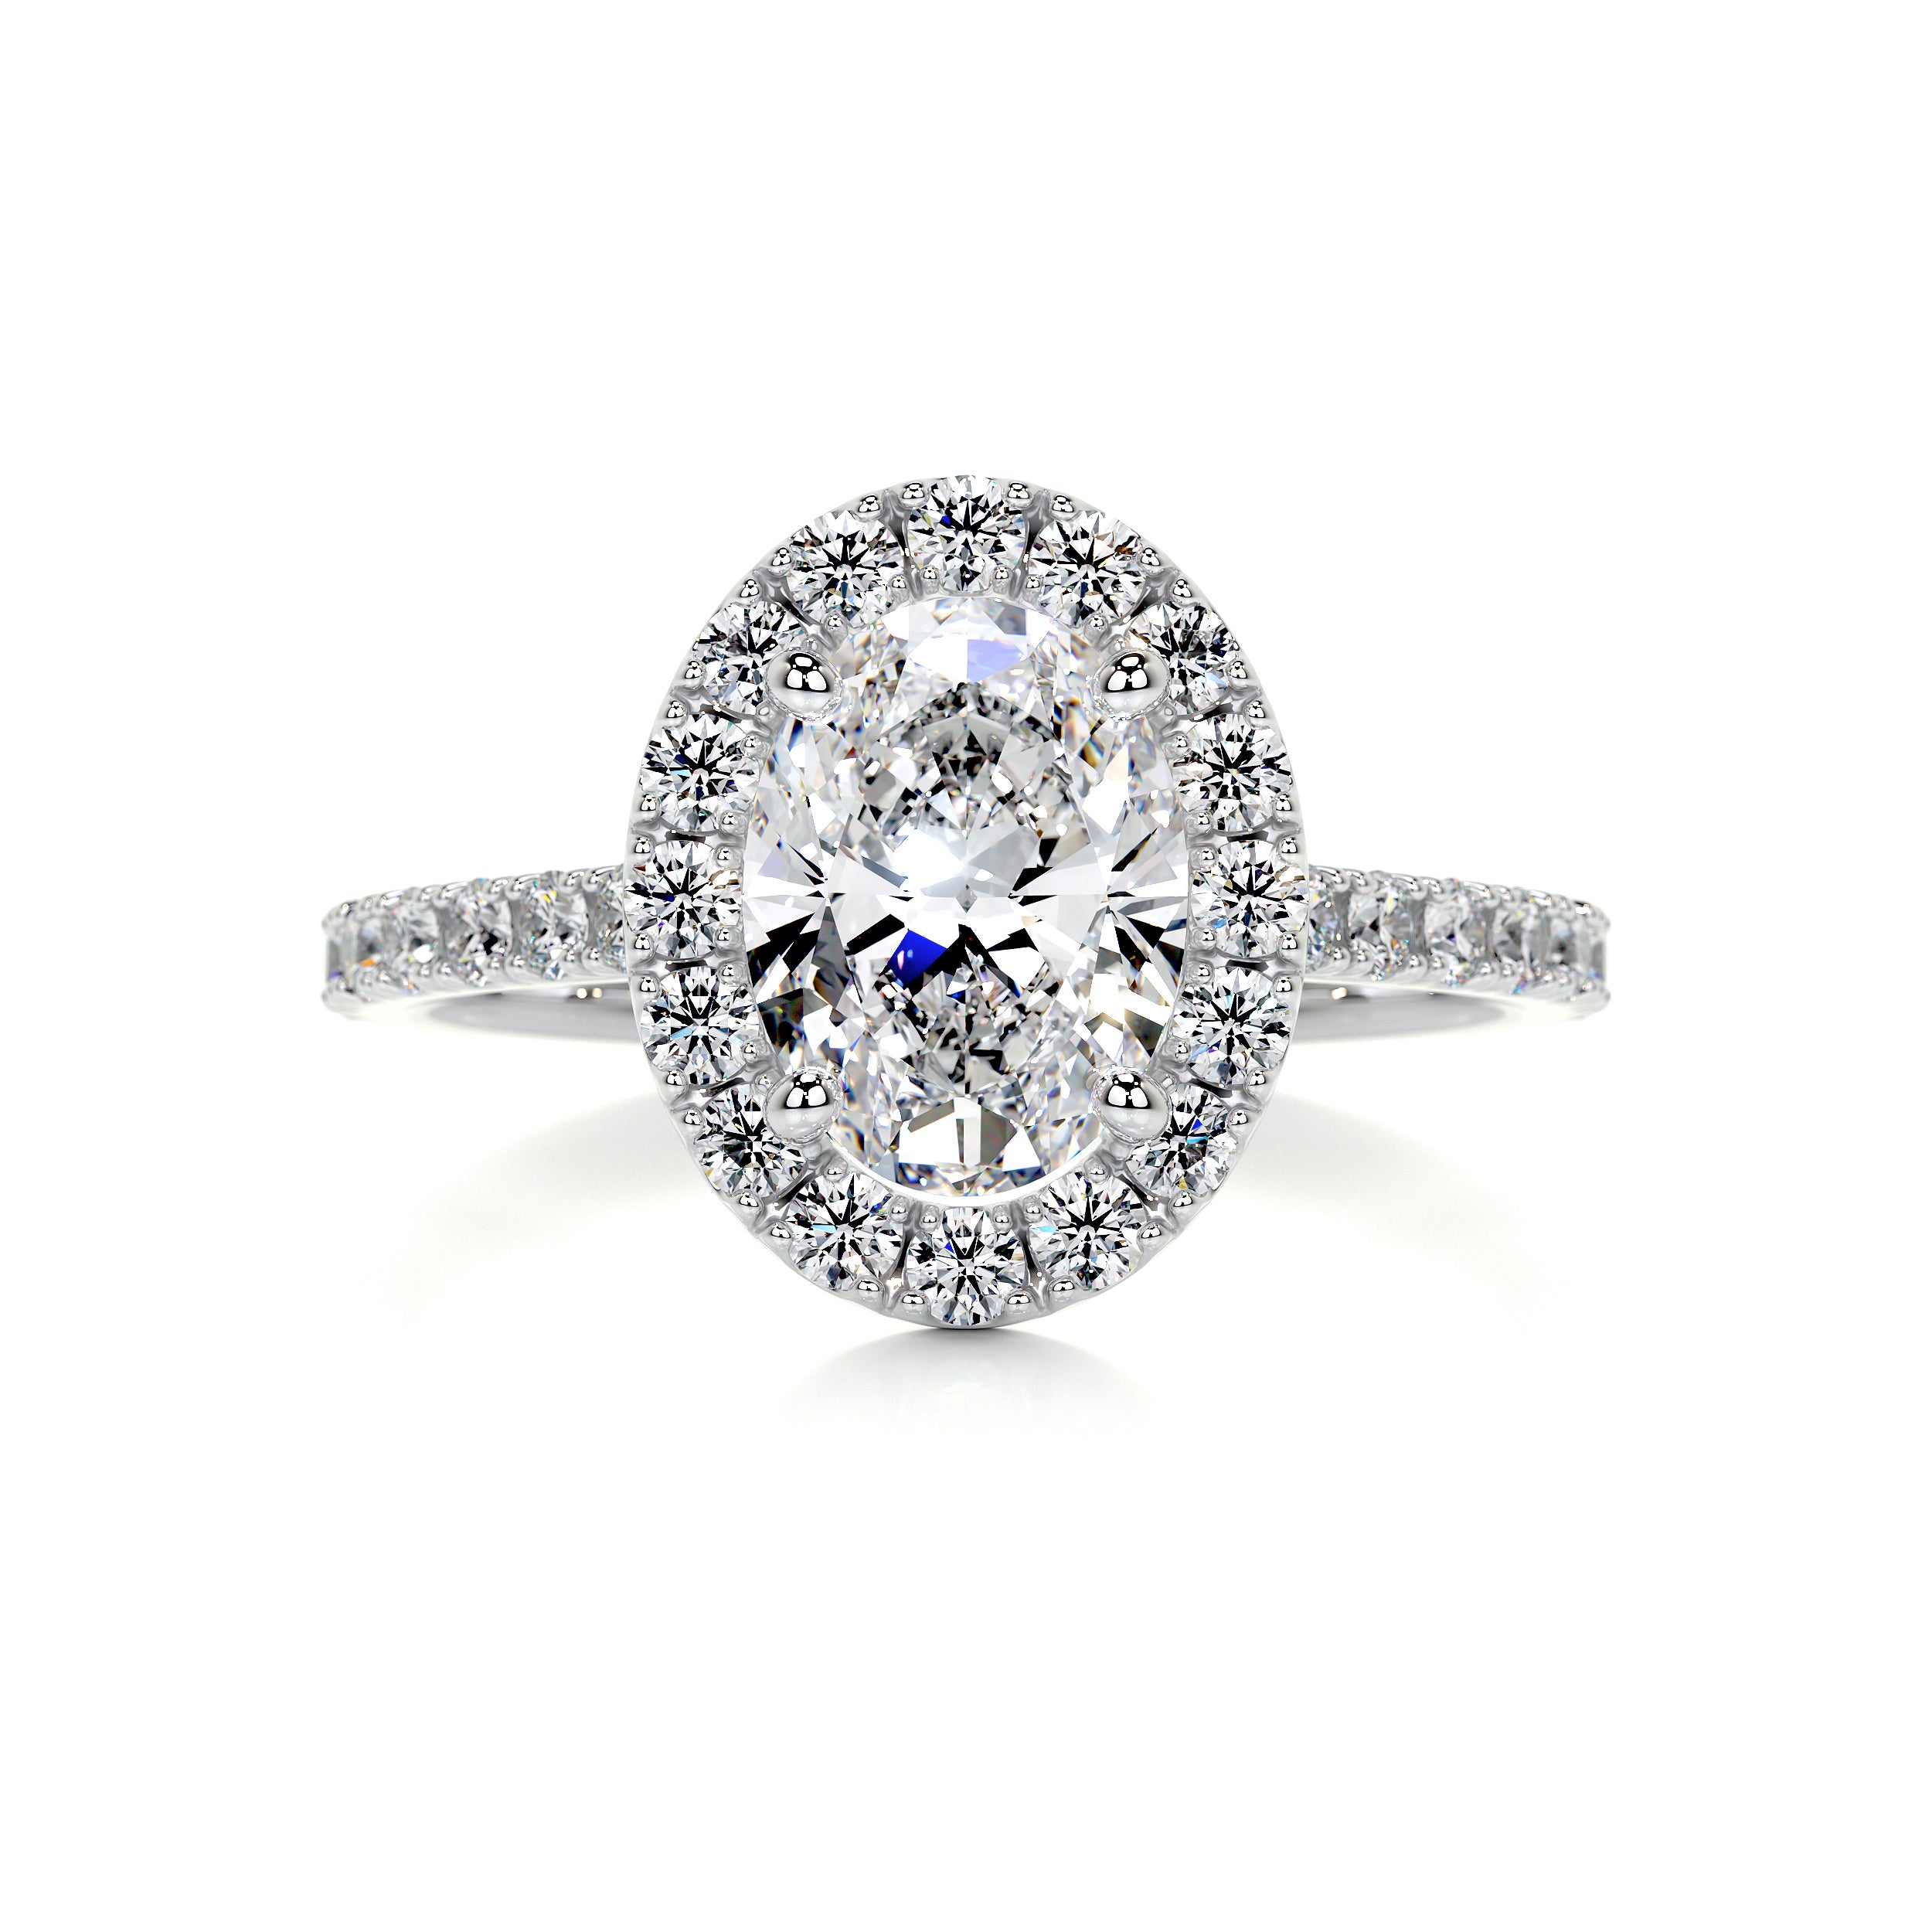 Maria Diamond Engagement Ring   (1.3 Carat) - Platinum